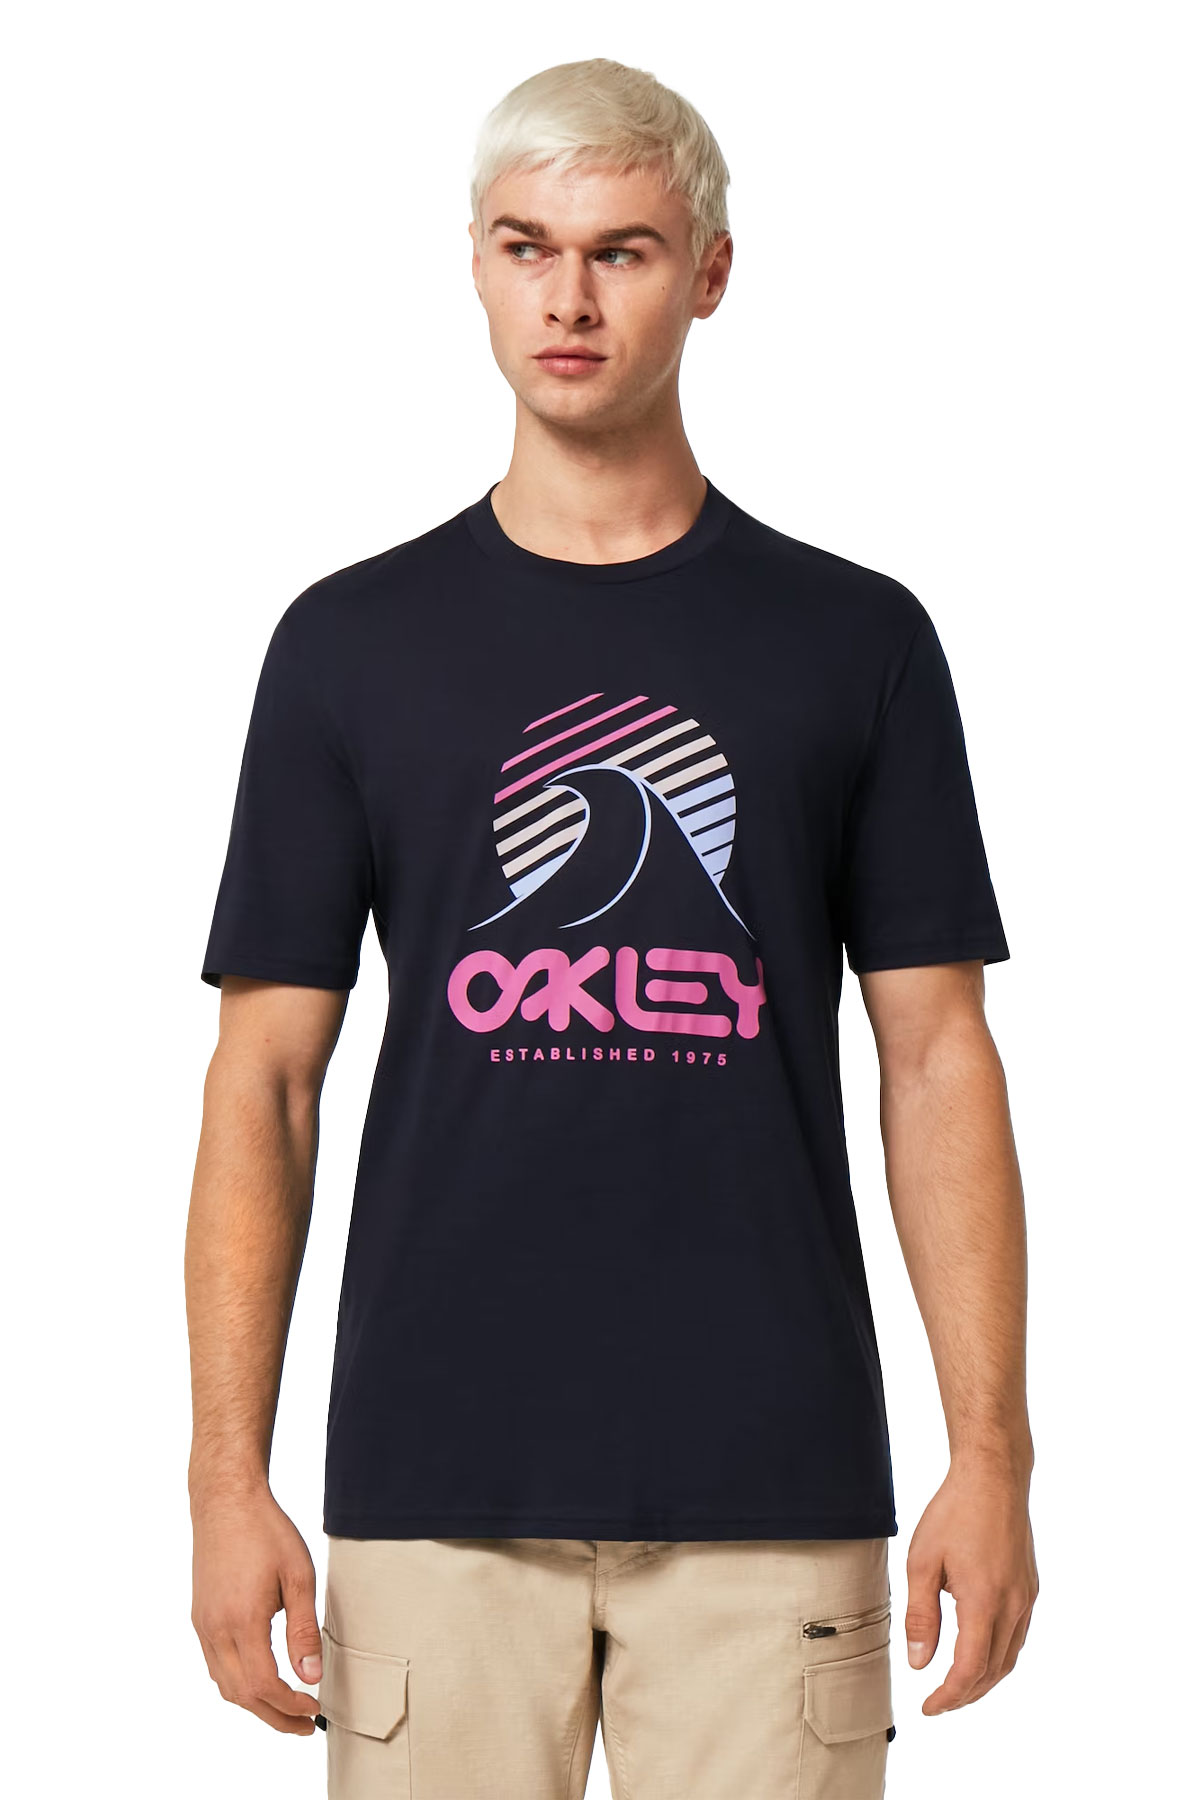 Oakley One Wave B1B Tee - Fathom